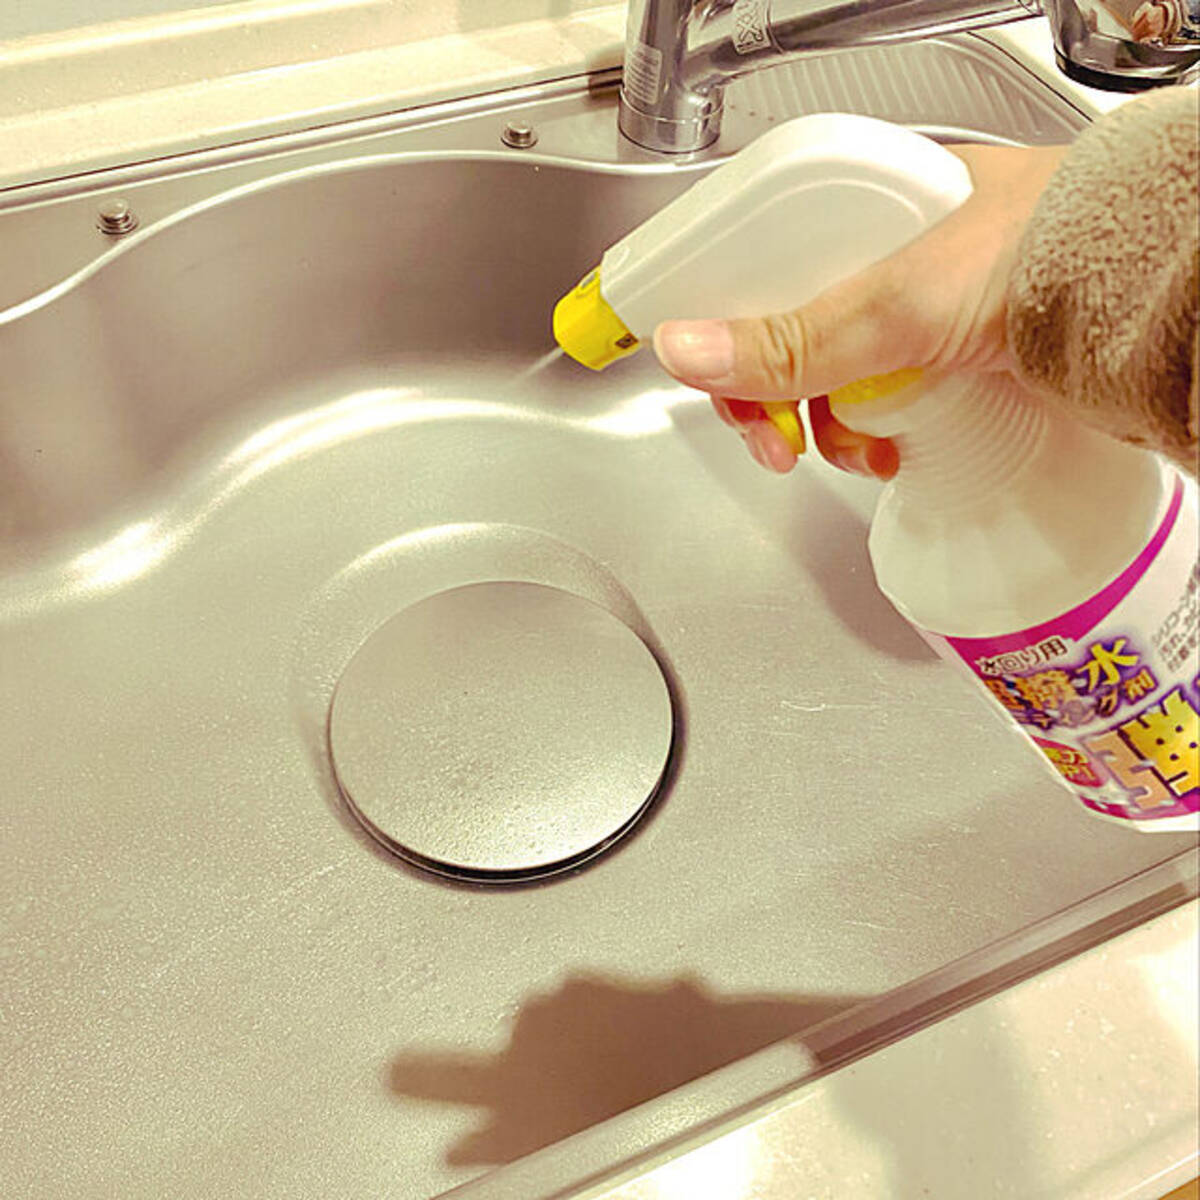 キレイが長持ちする 我が家の水回り掃除方法とおすすめアイテム (2022年7月8日) - エキサイトニュース